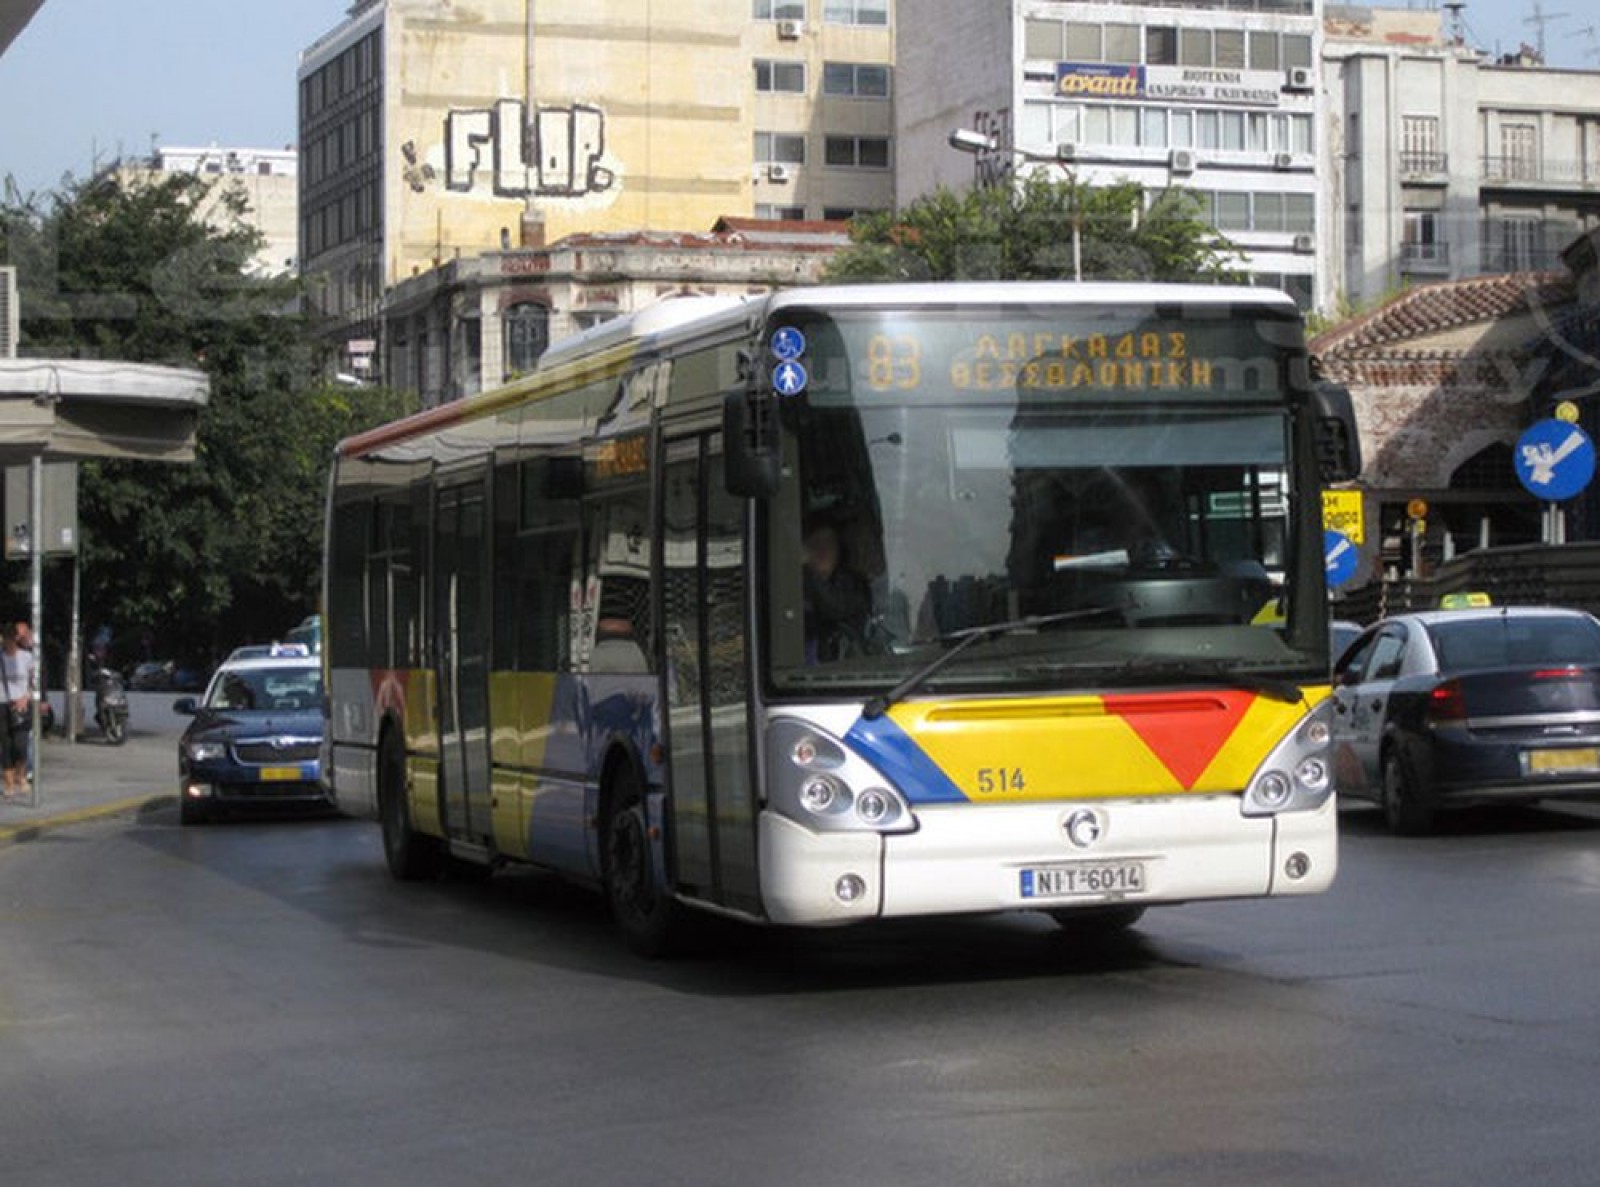 Δωρεάν μετακινήσεις με τα λεωφορεία του ΟΑΣΘ σήμερα στη Θεσσαλονίκη